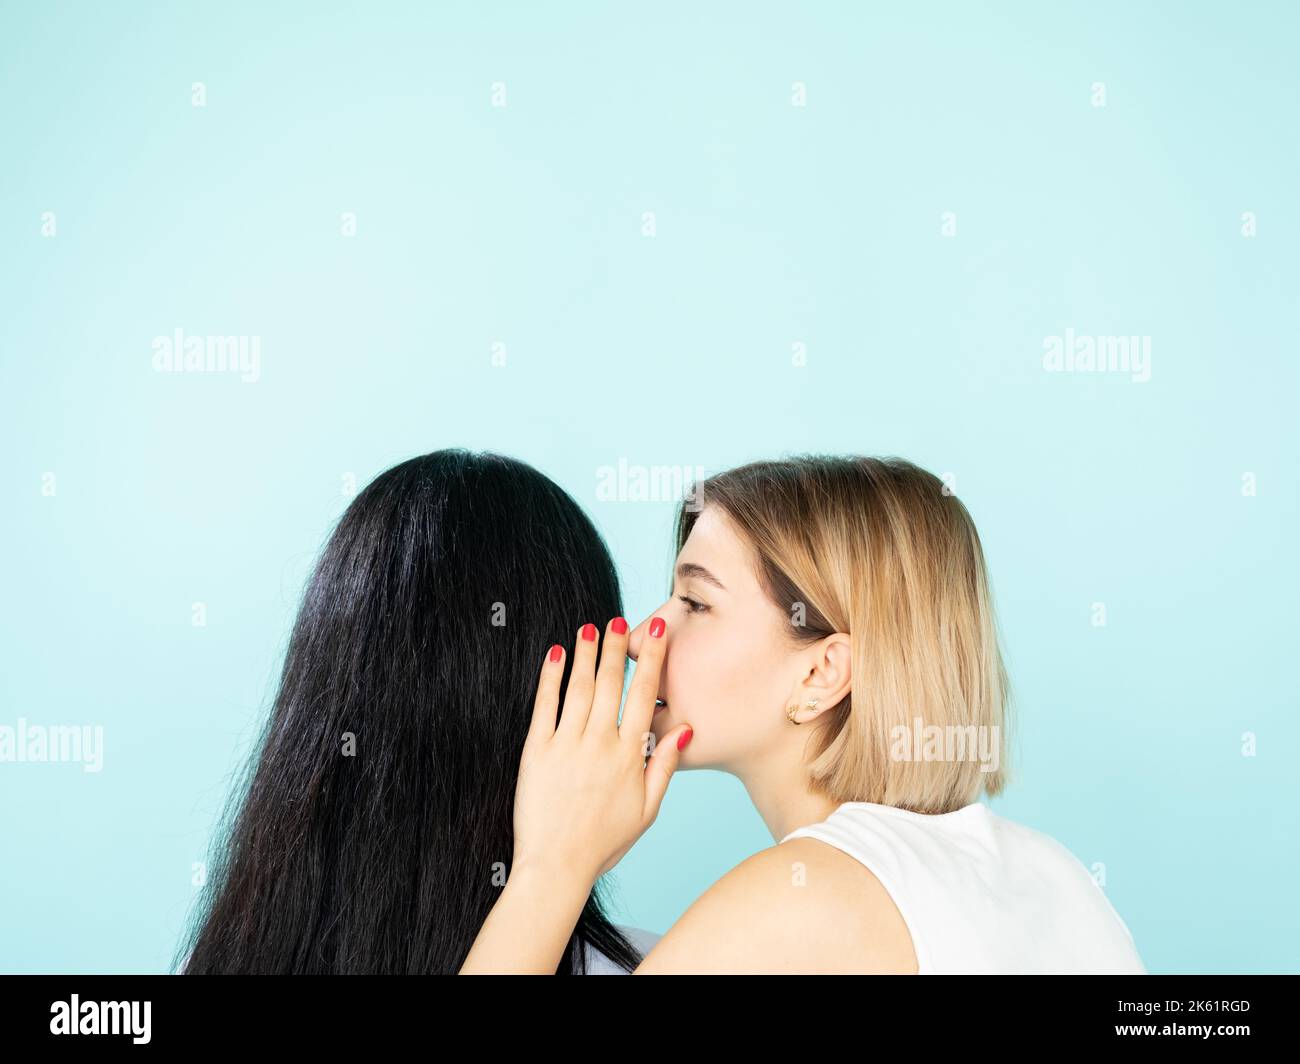 Freundliche Klatsch weibliche Geheimnisse Gerüchte verbreiten Stockfoto